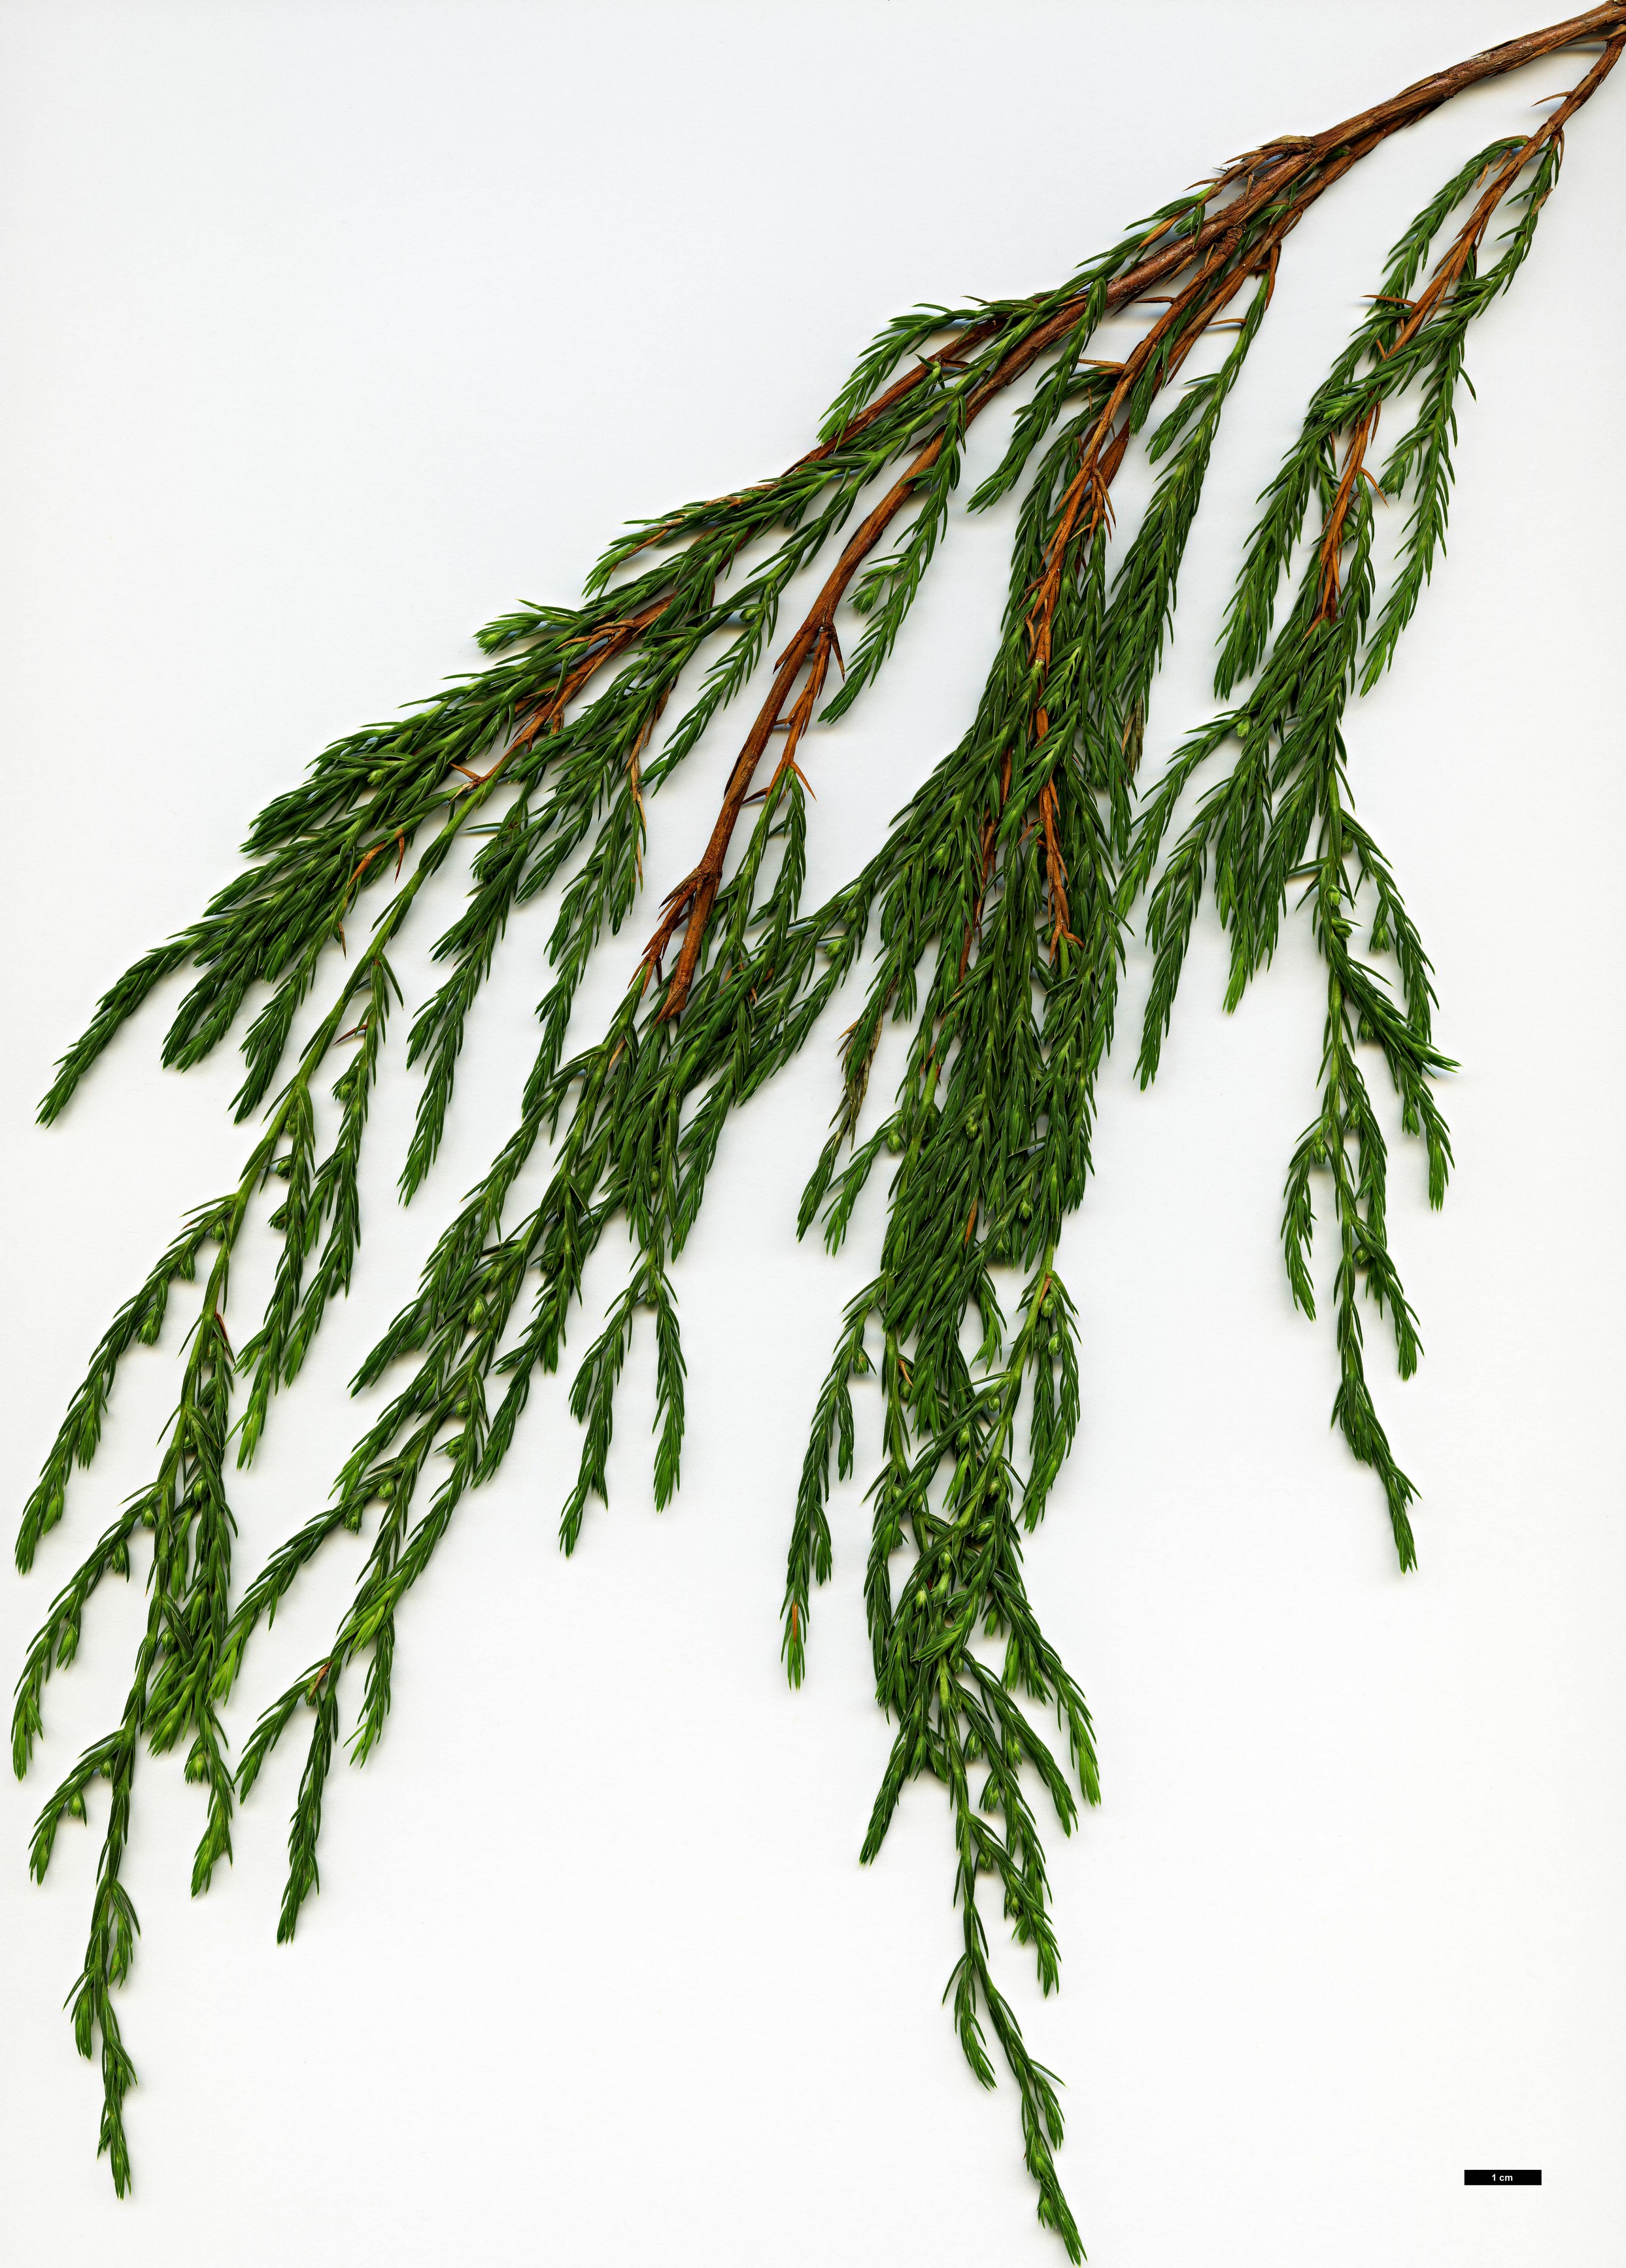 High resolution image: Family: Cupressaceae - Genus: Juniperus - Taxon: recurva - SpeciesSub: var. coxii